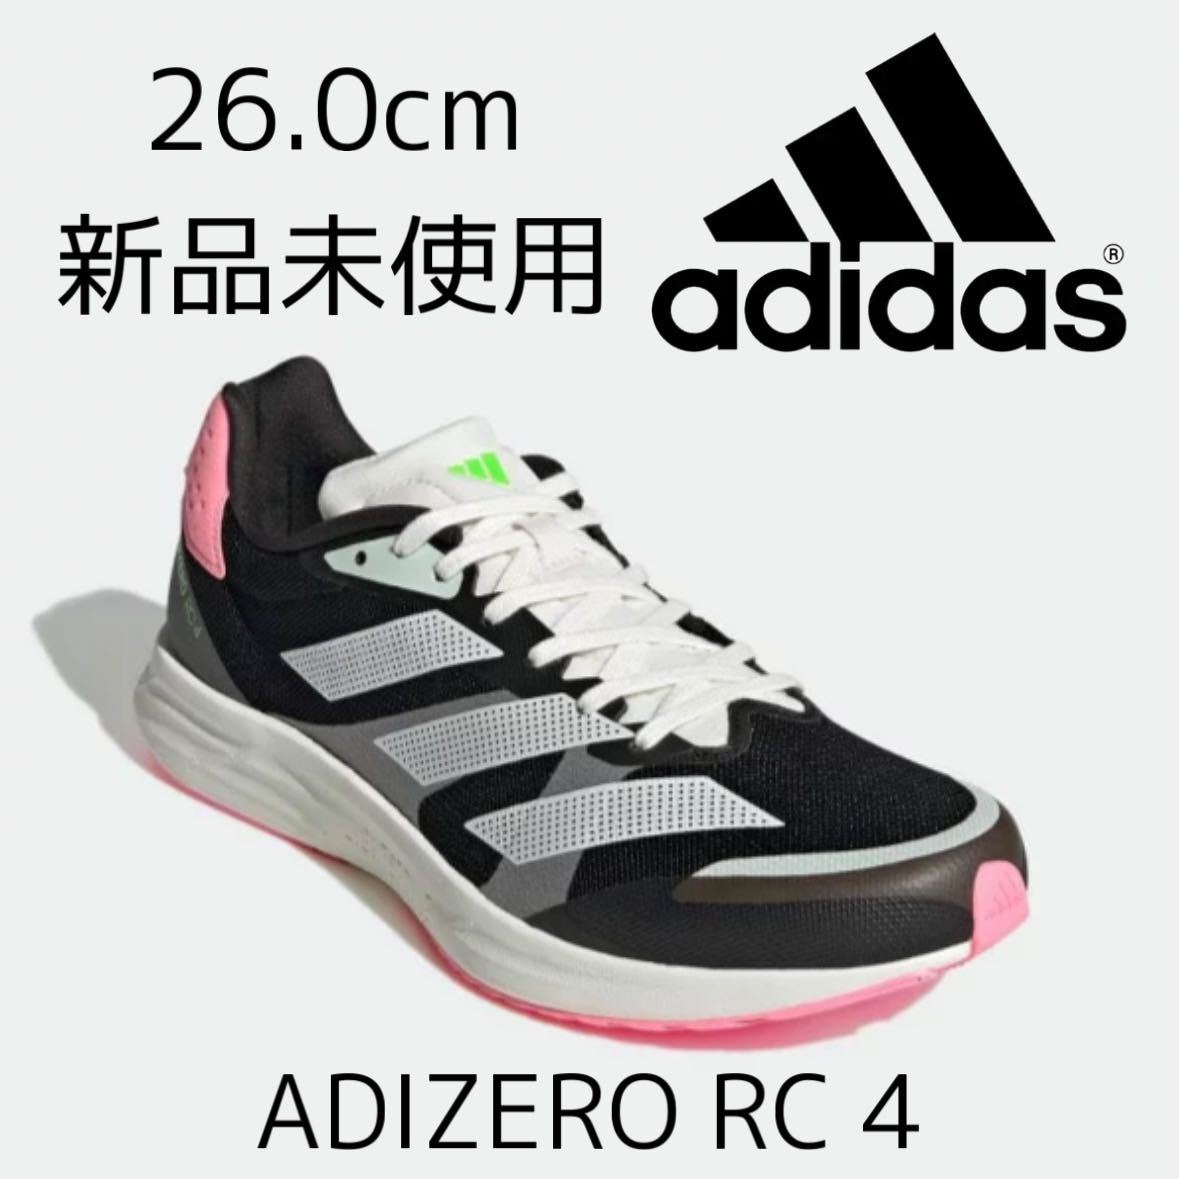 26.0cm 新品 adidas adizero RC 4 アディゼロ ランニングシューズ 軽量 マラソン レース トレーニングシューズ 黒 ブラック 白 ピンク 26cm_画像1